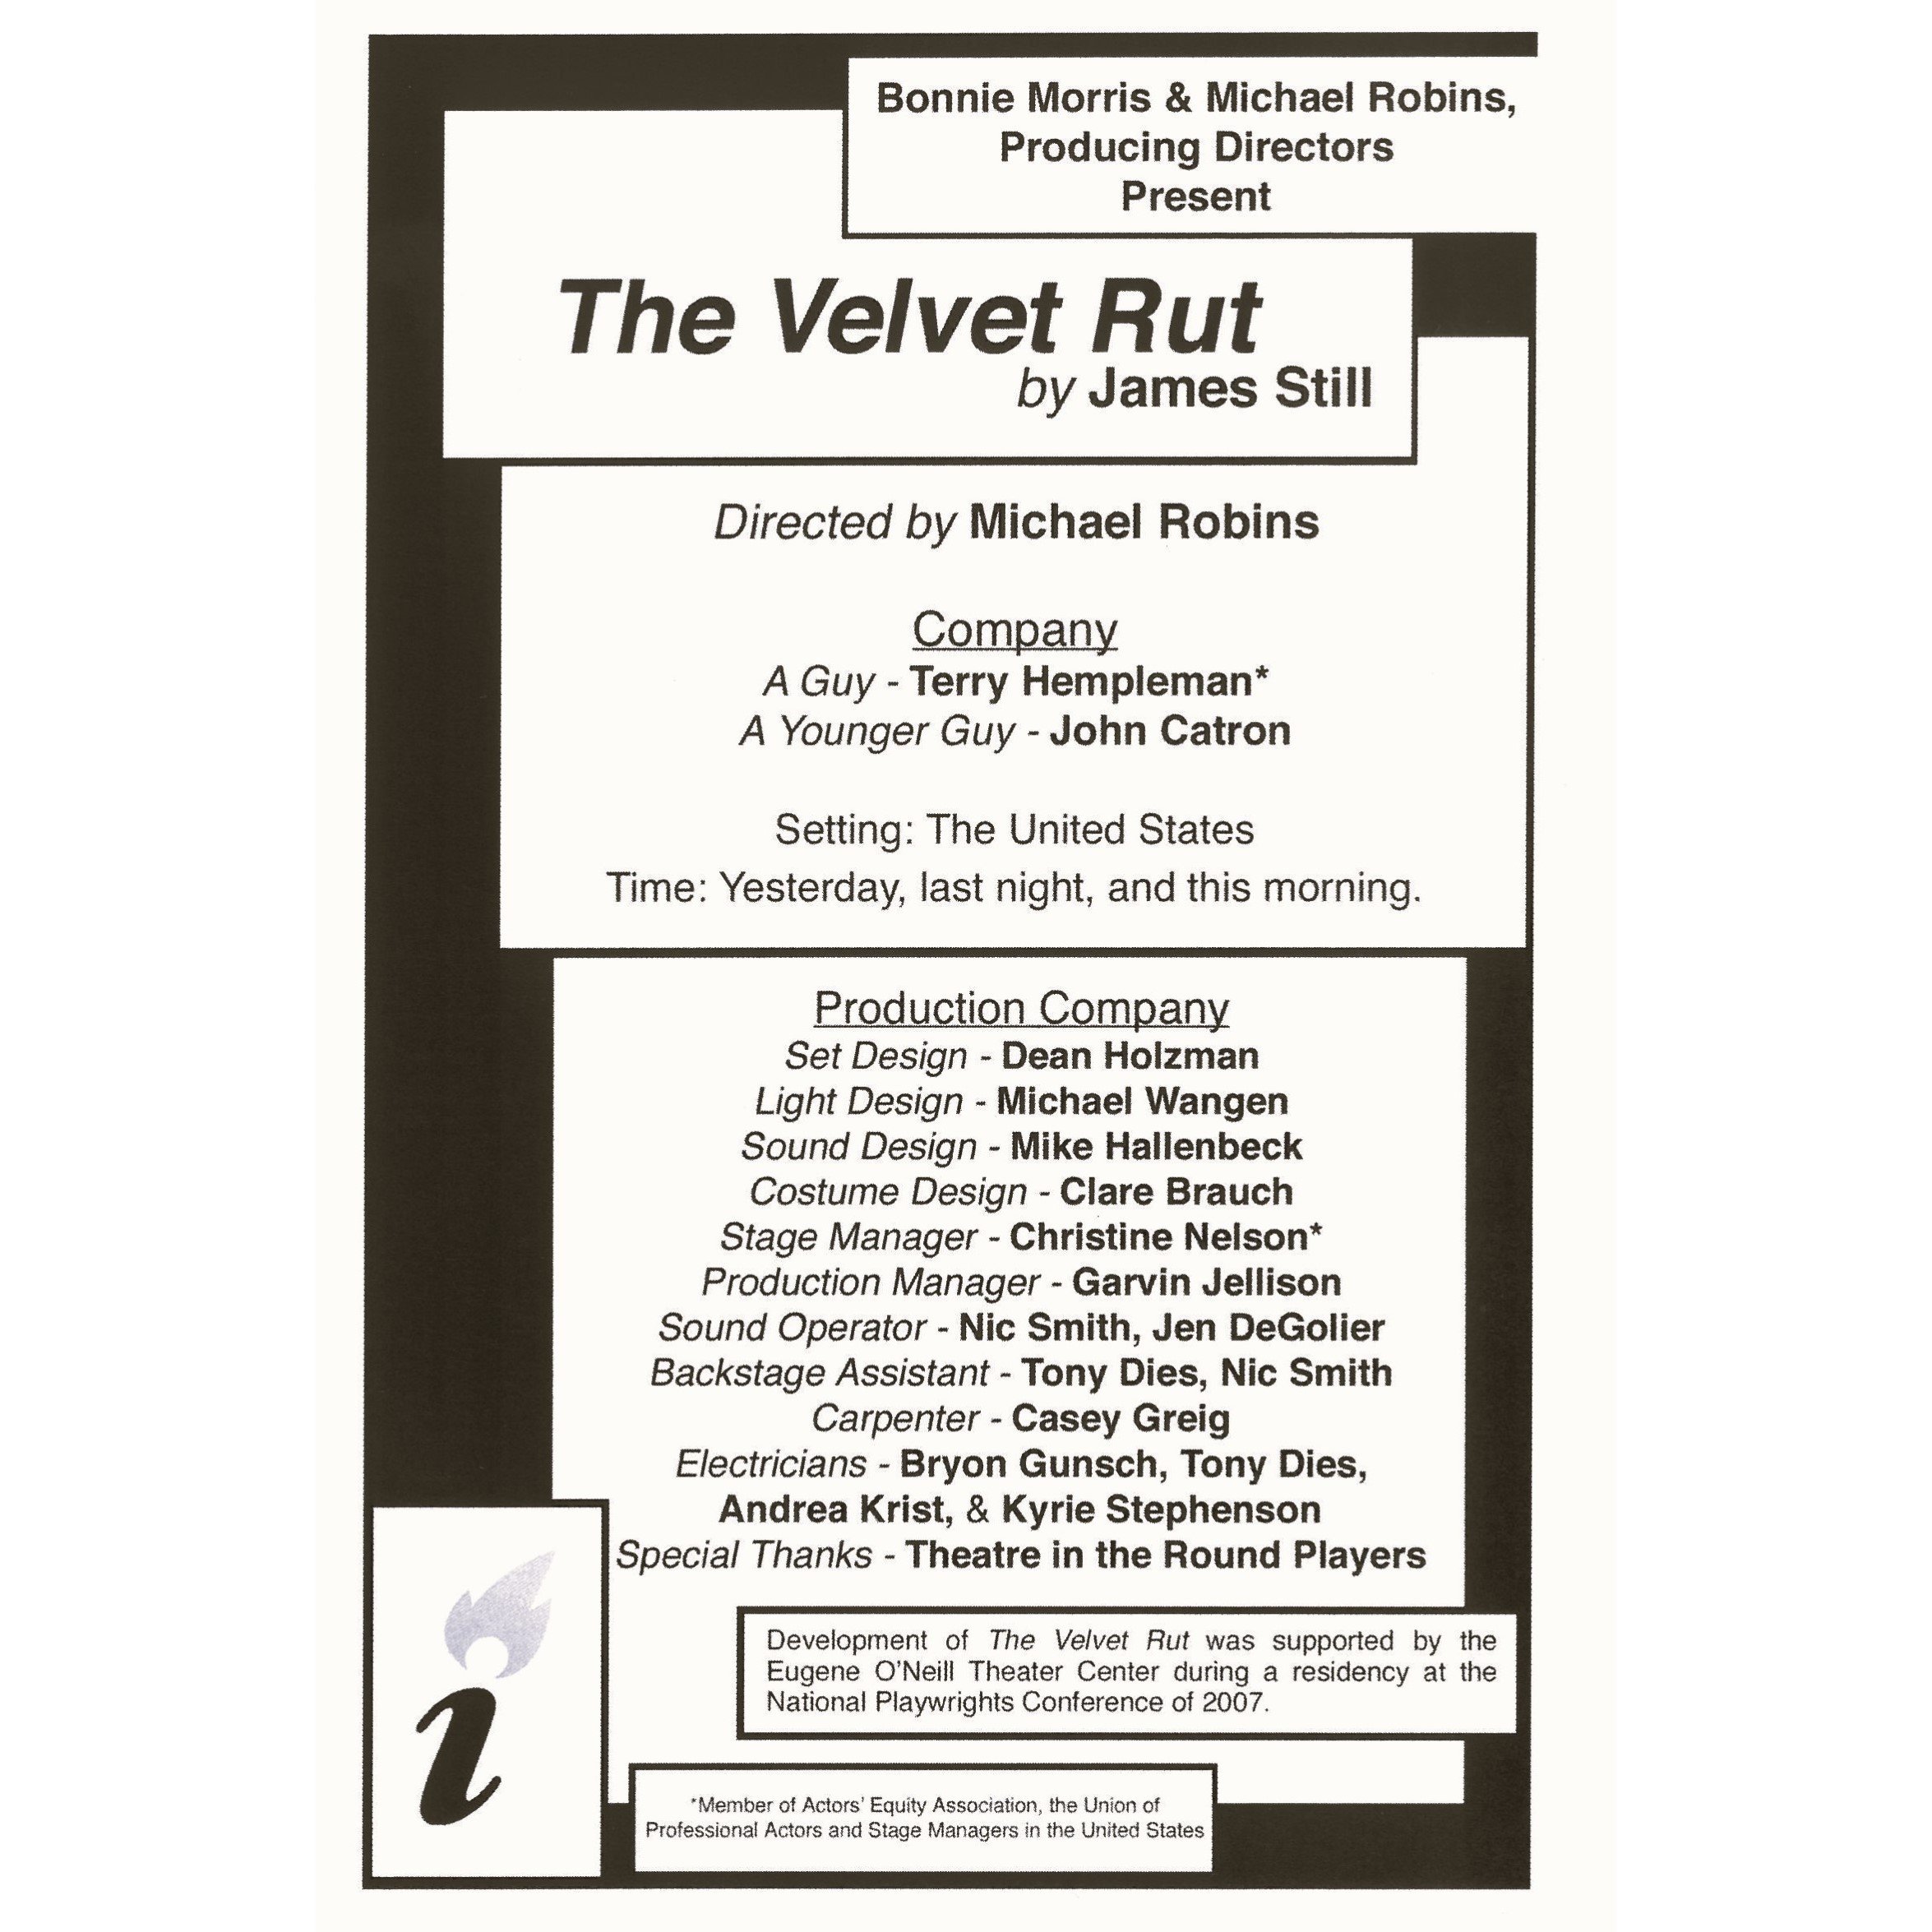 2009 - The Velvet Rut